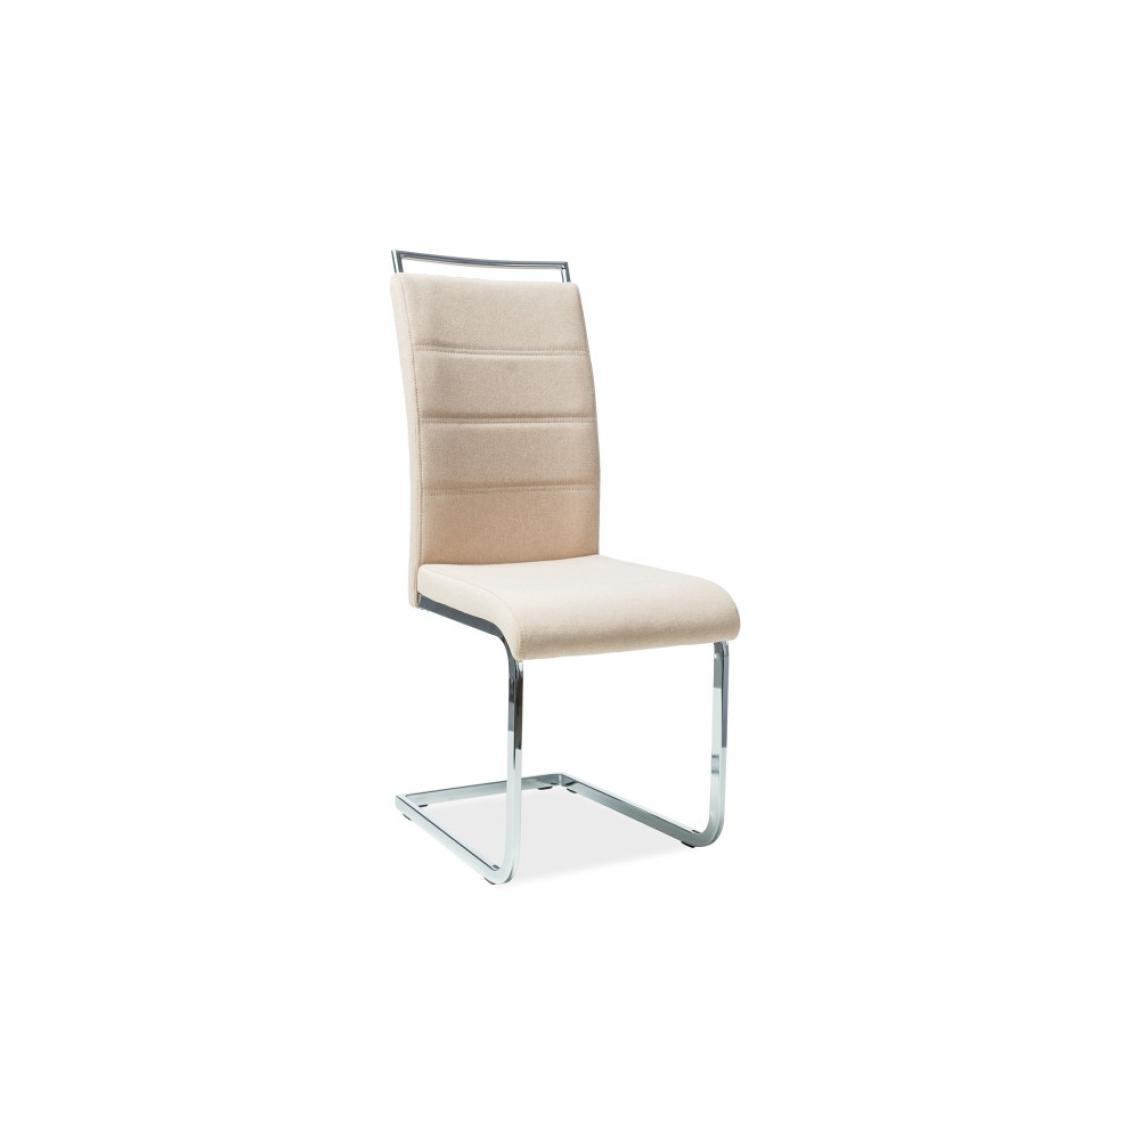 Ac-Deco - Chaise en tissu - H441 - 42 x 41 x 102 cm - Beige - Chaises